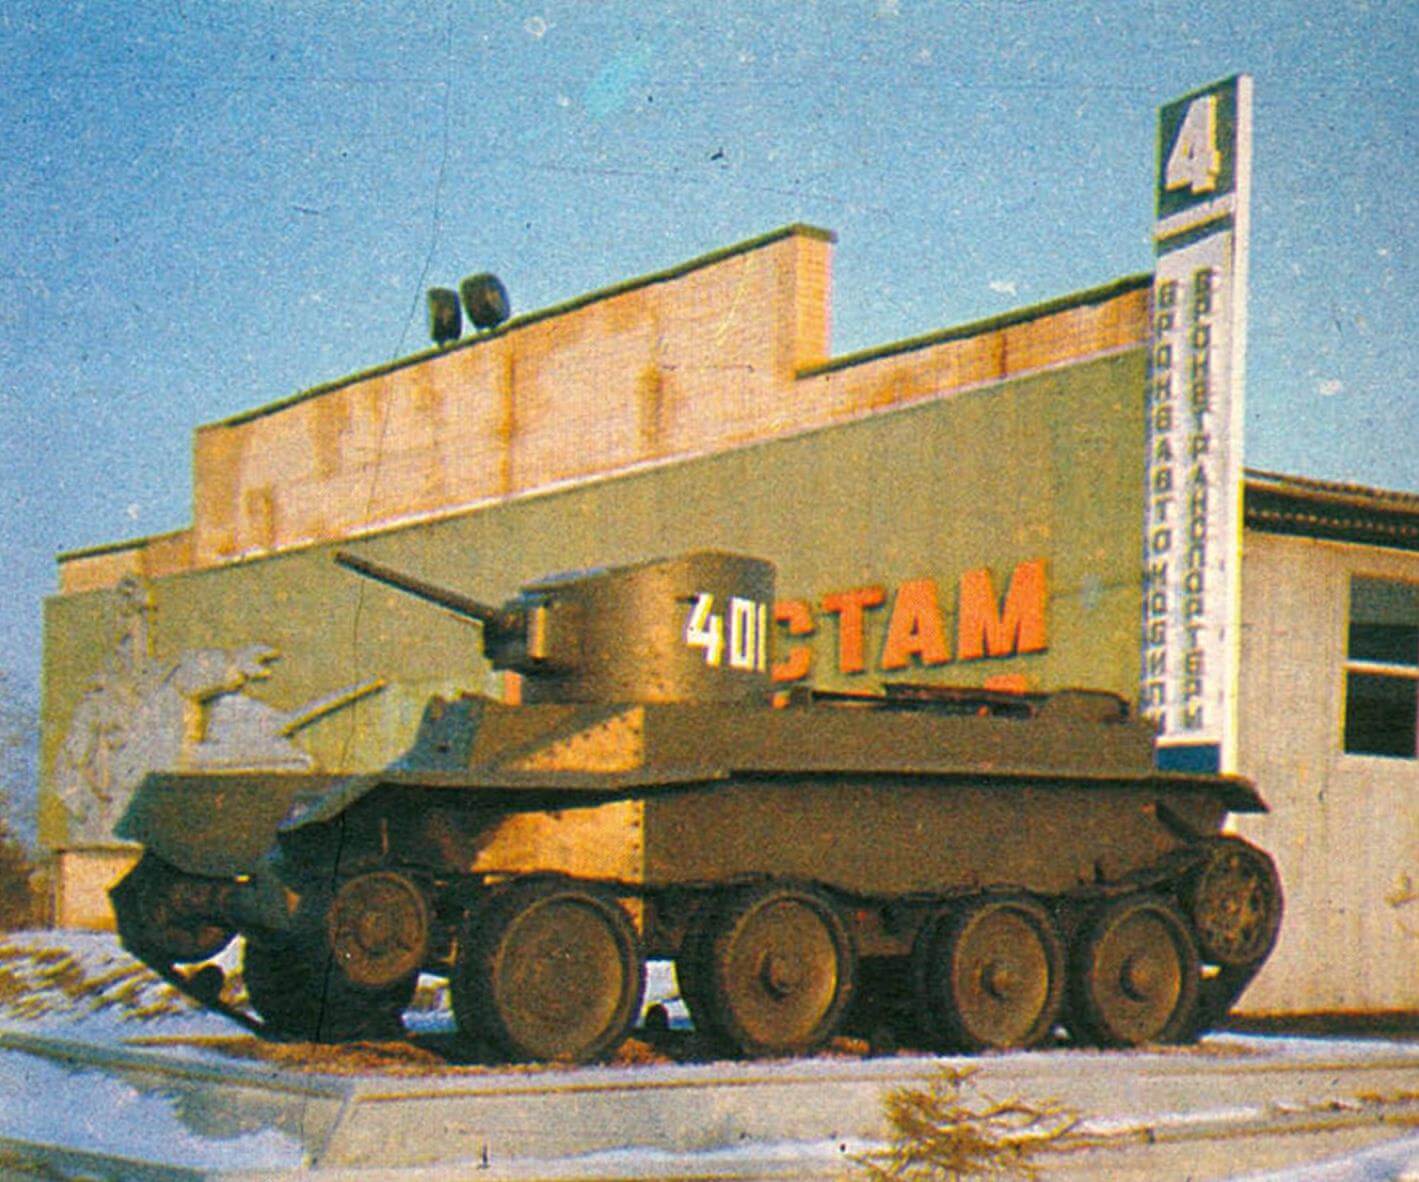 Легкий колесно-гусеничный танк БТ-2. Производился в 1931 — 1933 годах на Харьковском паровозостроительном заводе.